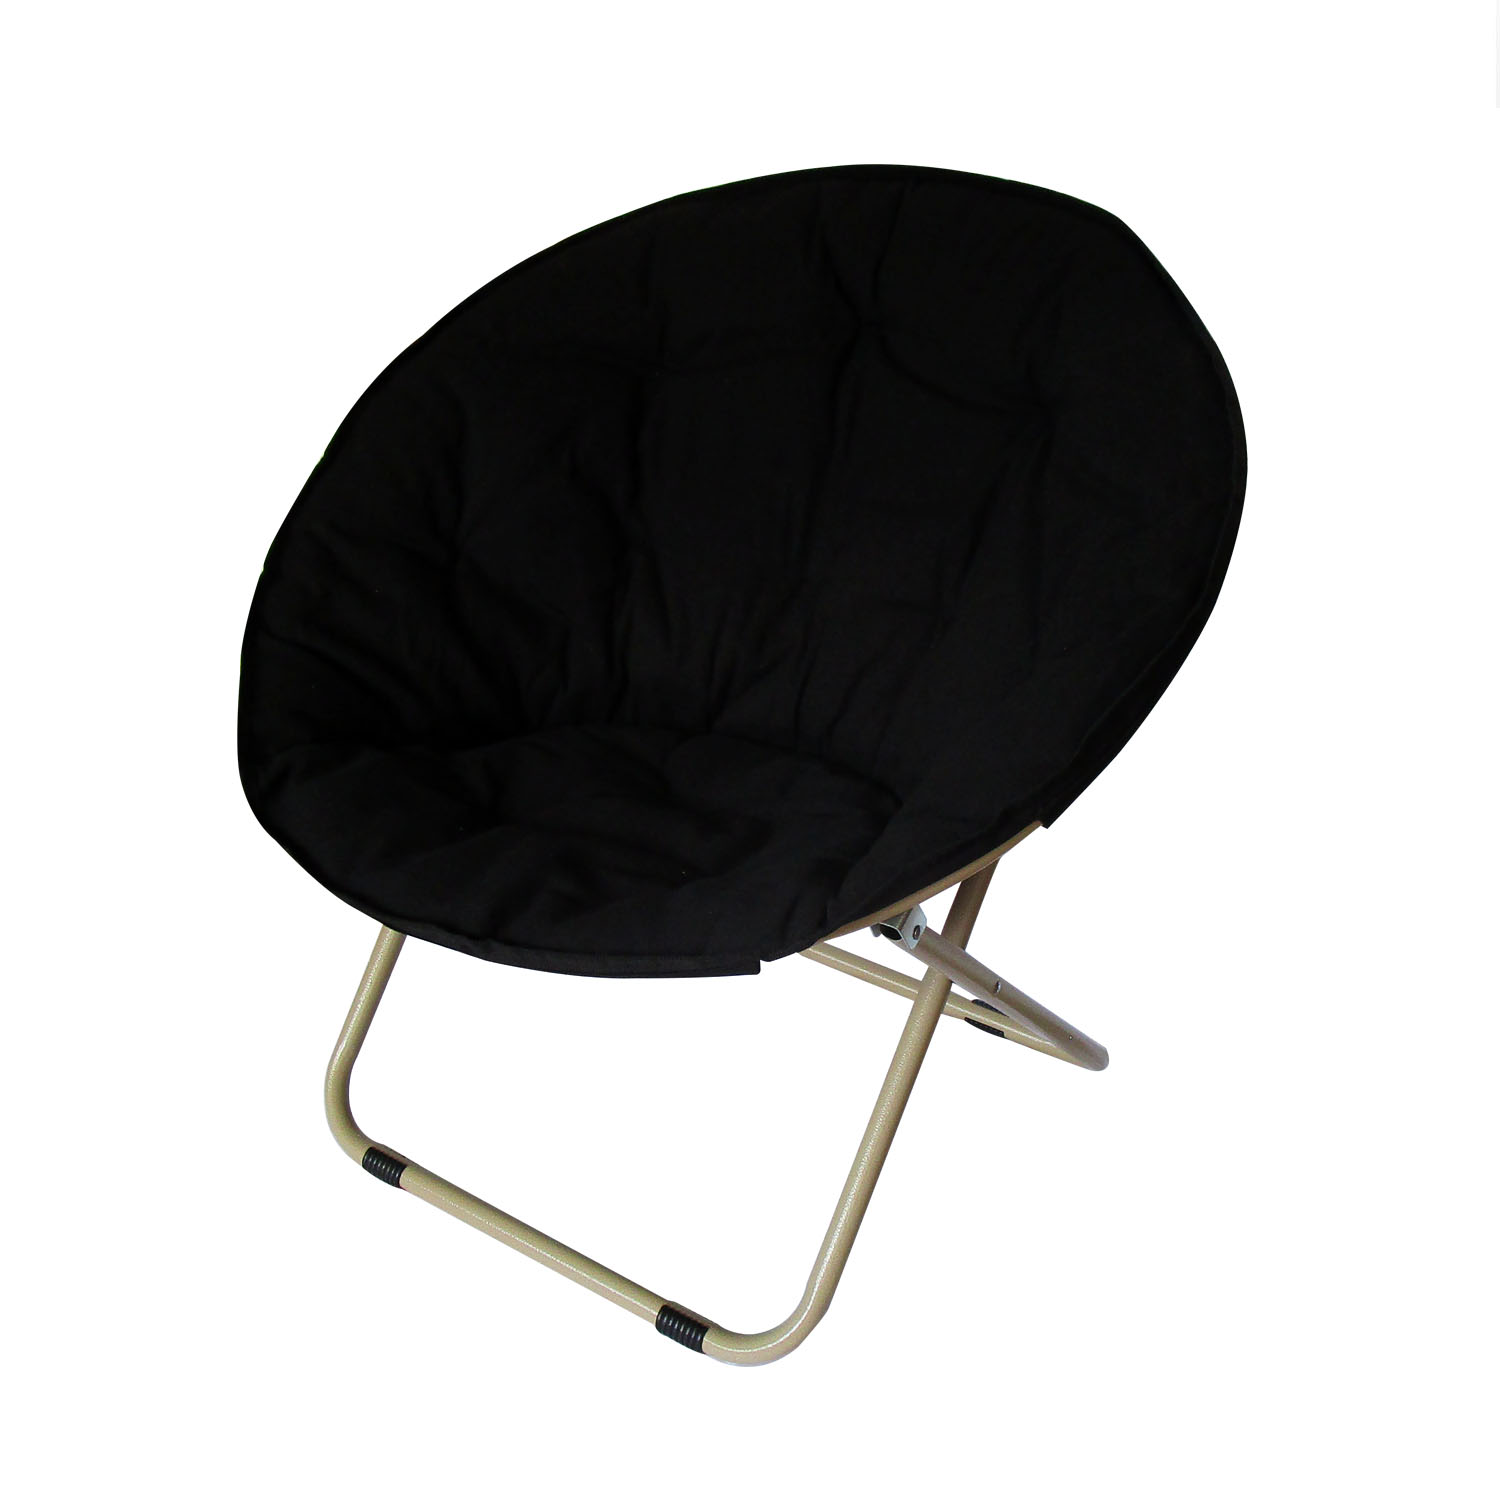 椅子 ジェネリック家具 おしゃれ ラウンジチェア 黒 赤 モダン シンプル コンパクト 折り畳み リプロダクト 屋外 テラス サークルチェア